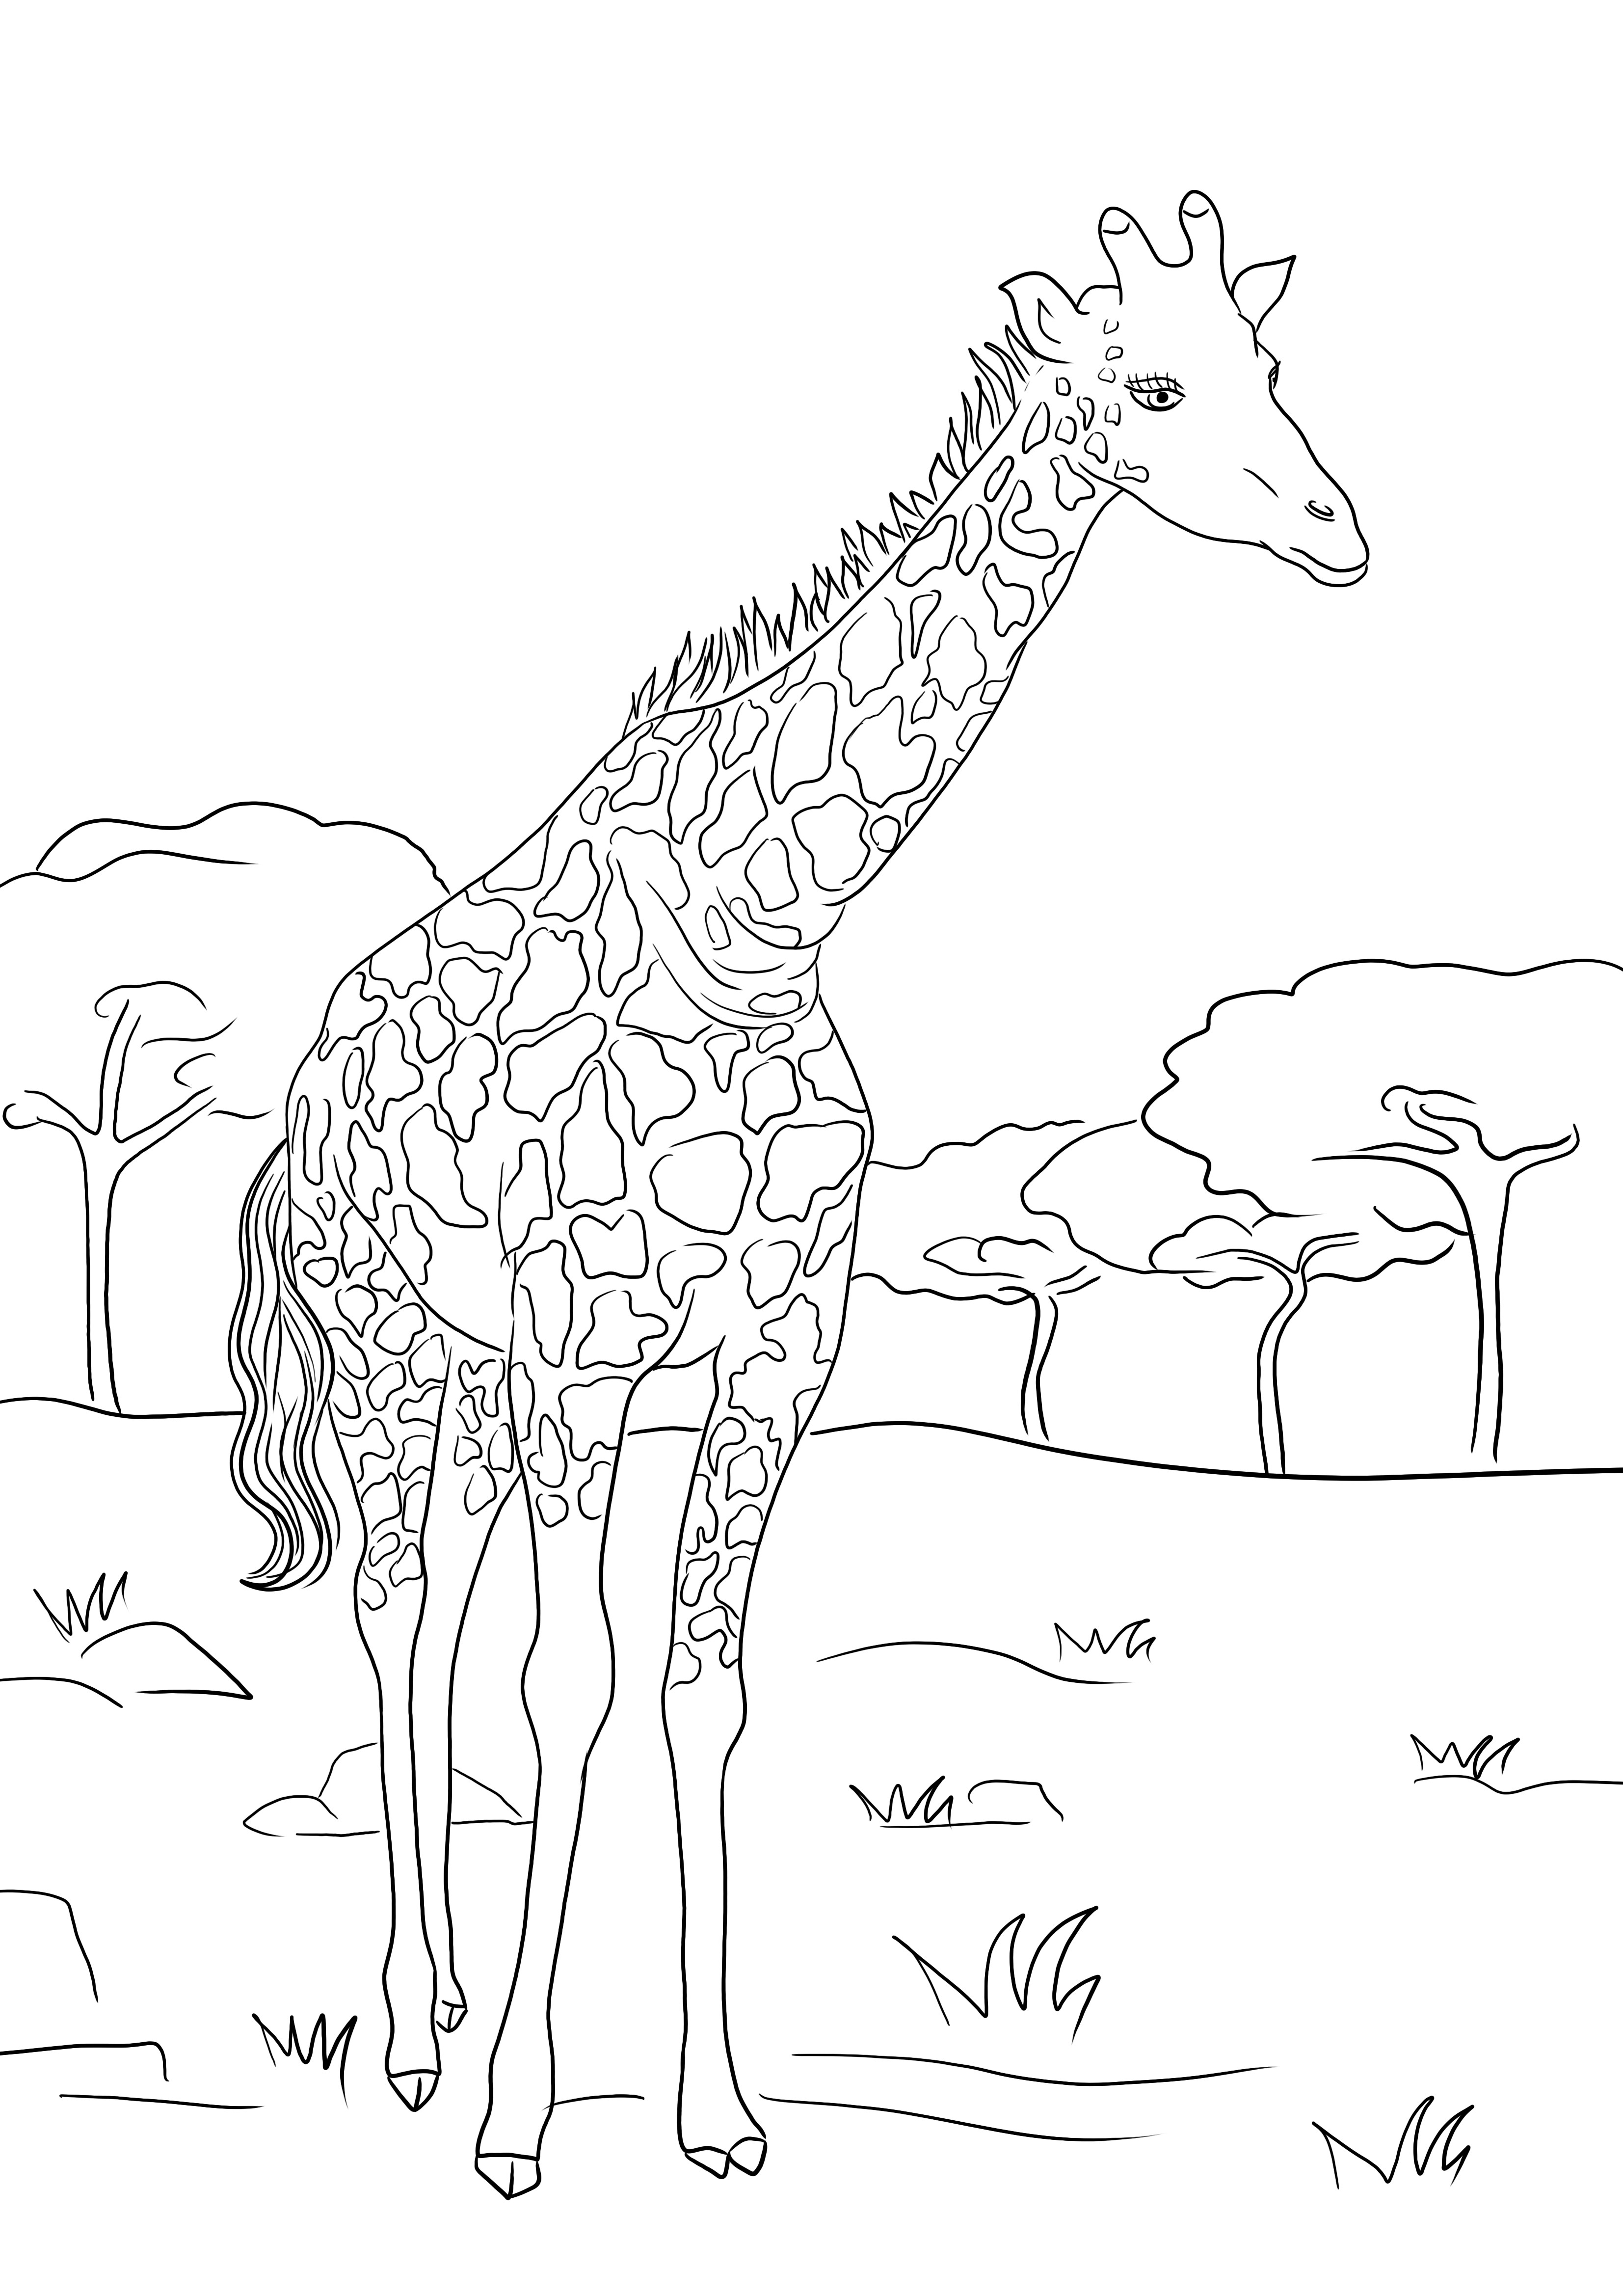 Güzel Zürafa indirmek veya ücretsiz olarak yazdırmak ve çocuklar tarafından renklendirmek için